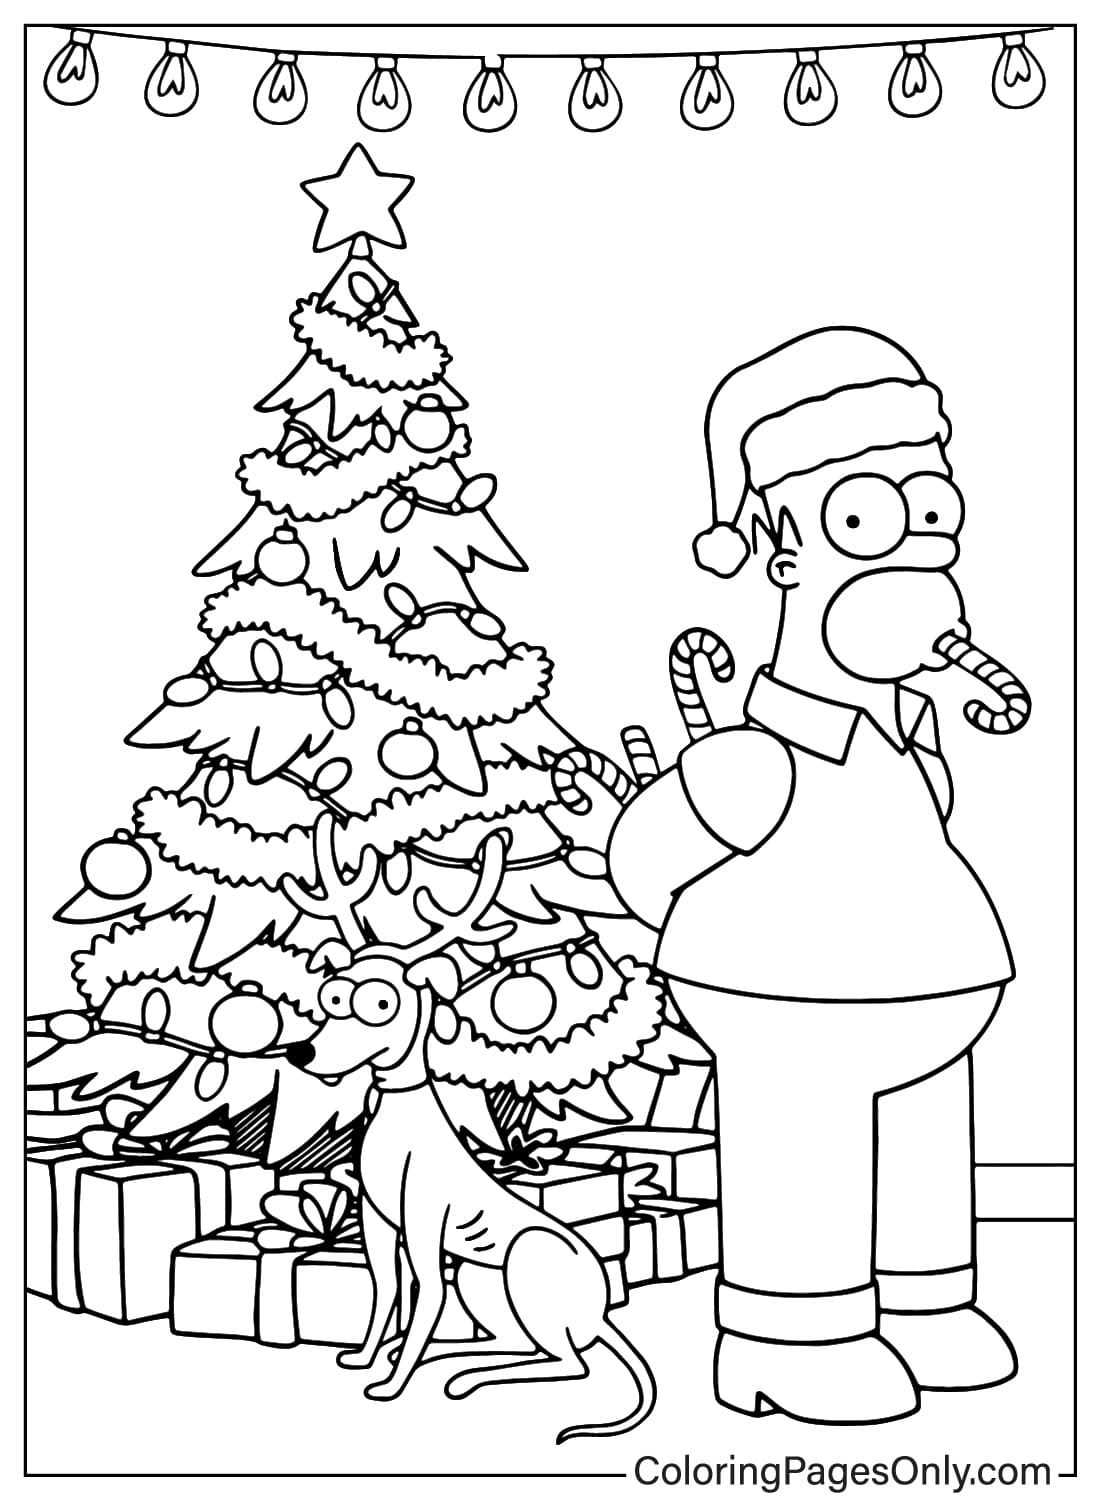 Stampa della pagina da colorare dei Simpson dai Simpson